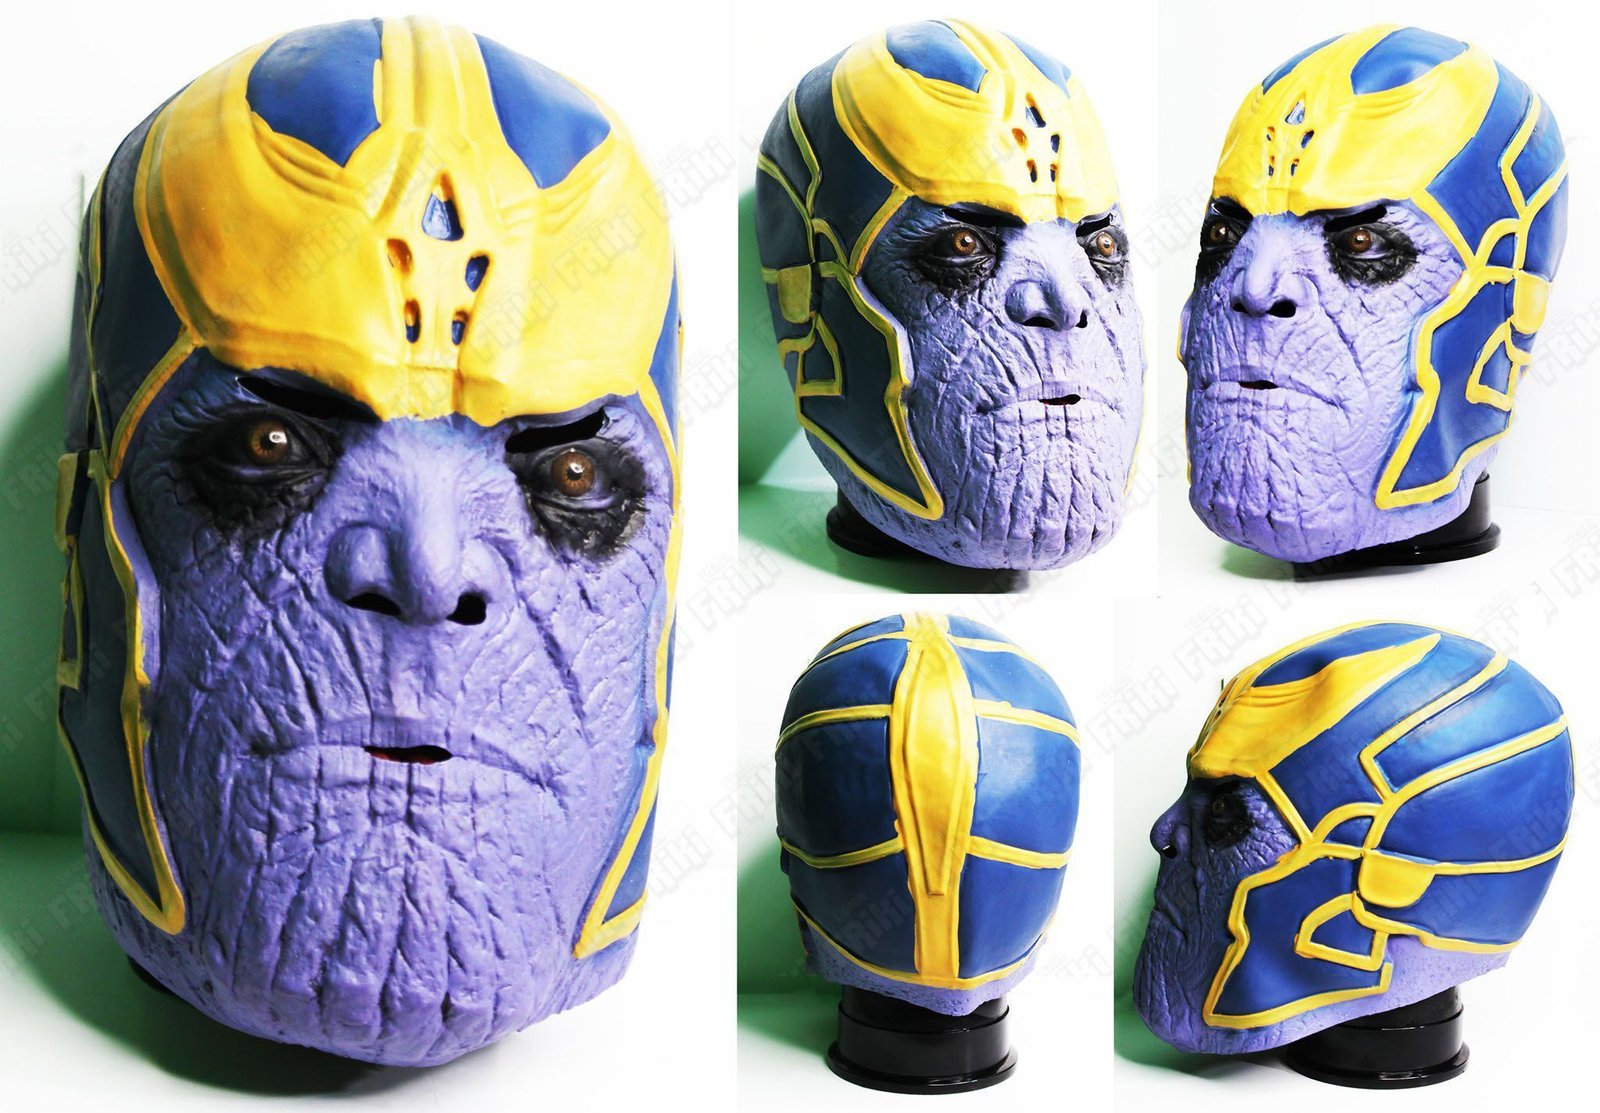 Máscara Cómics Avengers Ecuador Comprar Venden, Bonita Apariencia, práctica, Hermoso material: Látex Color: Morado, amarillo, negro, azul Estado: Nuevo